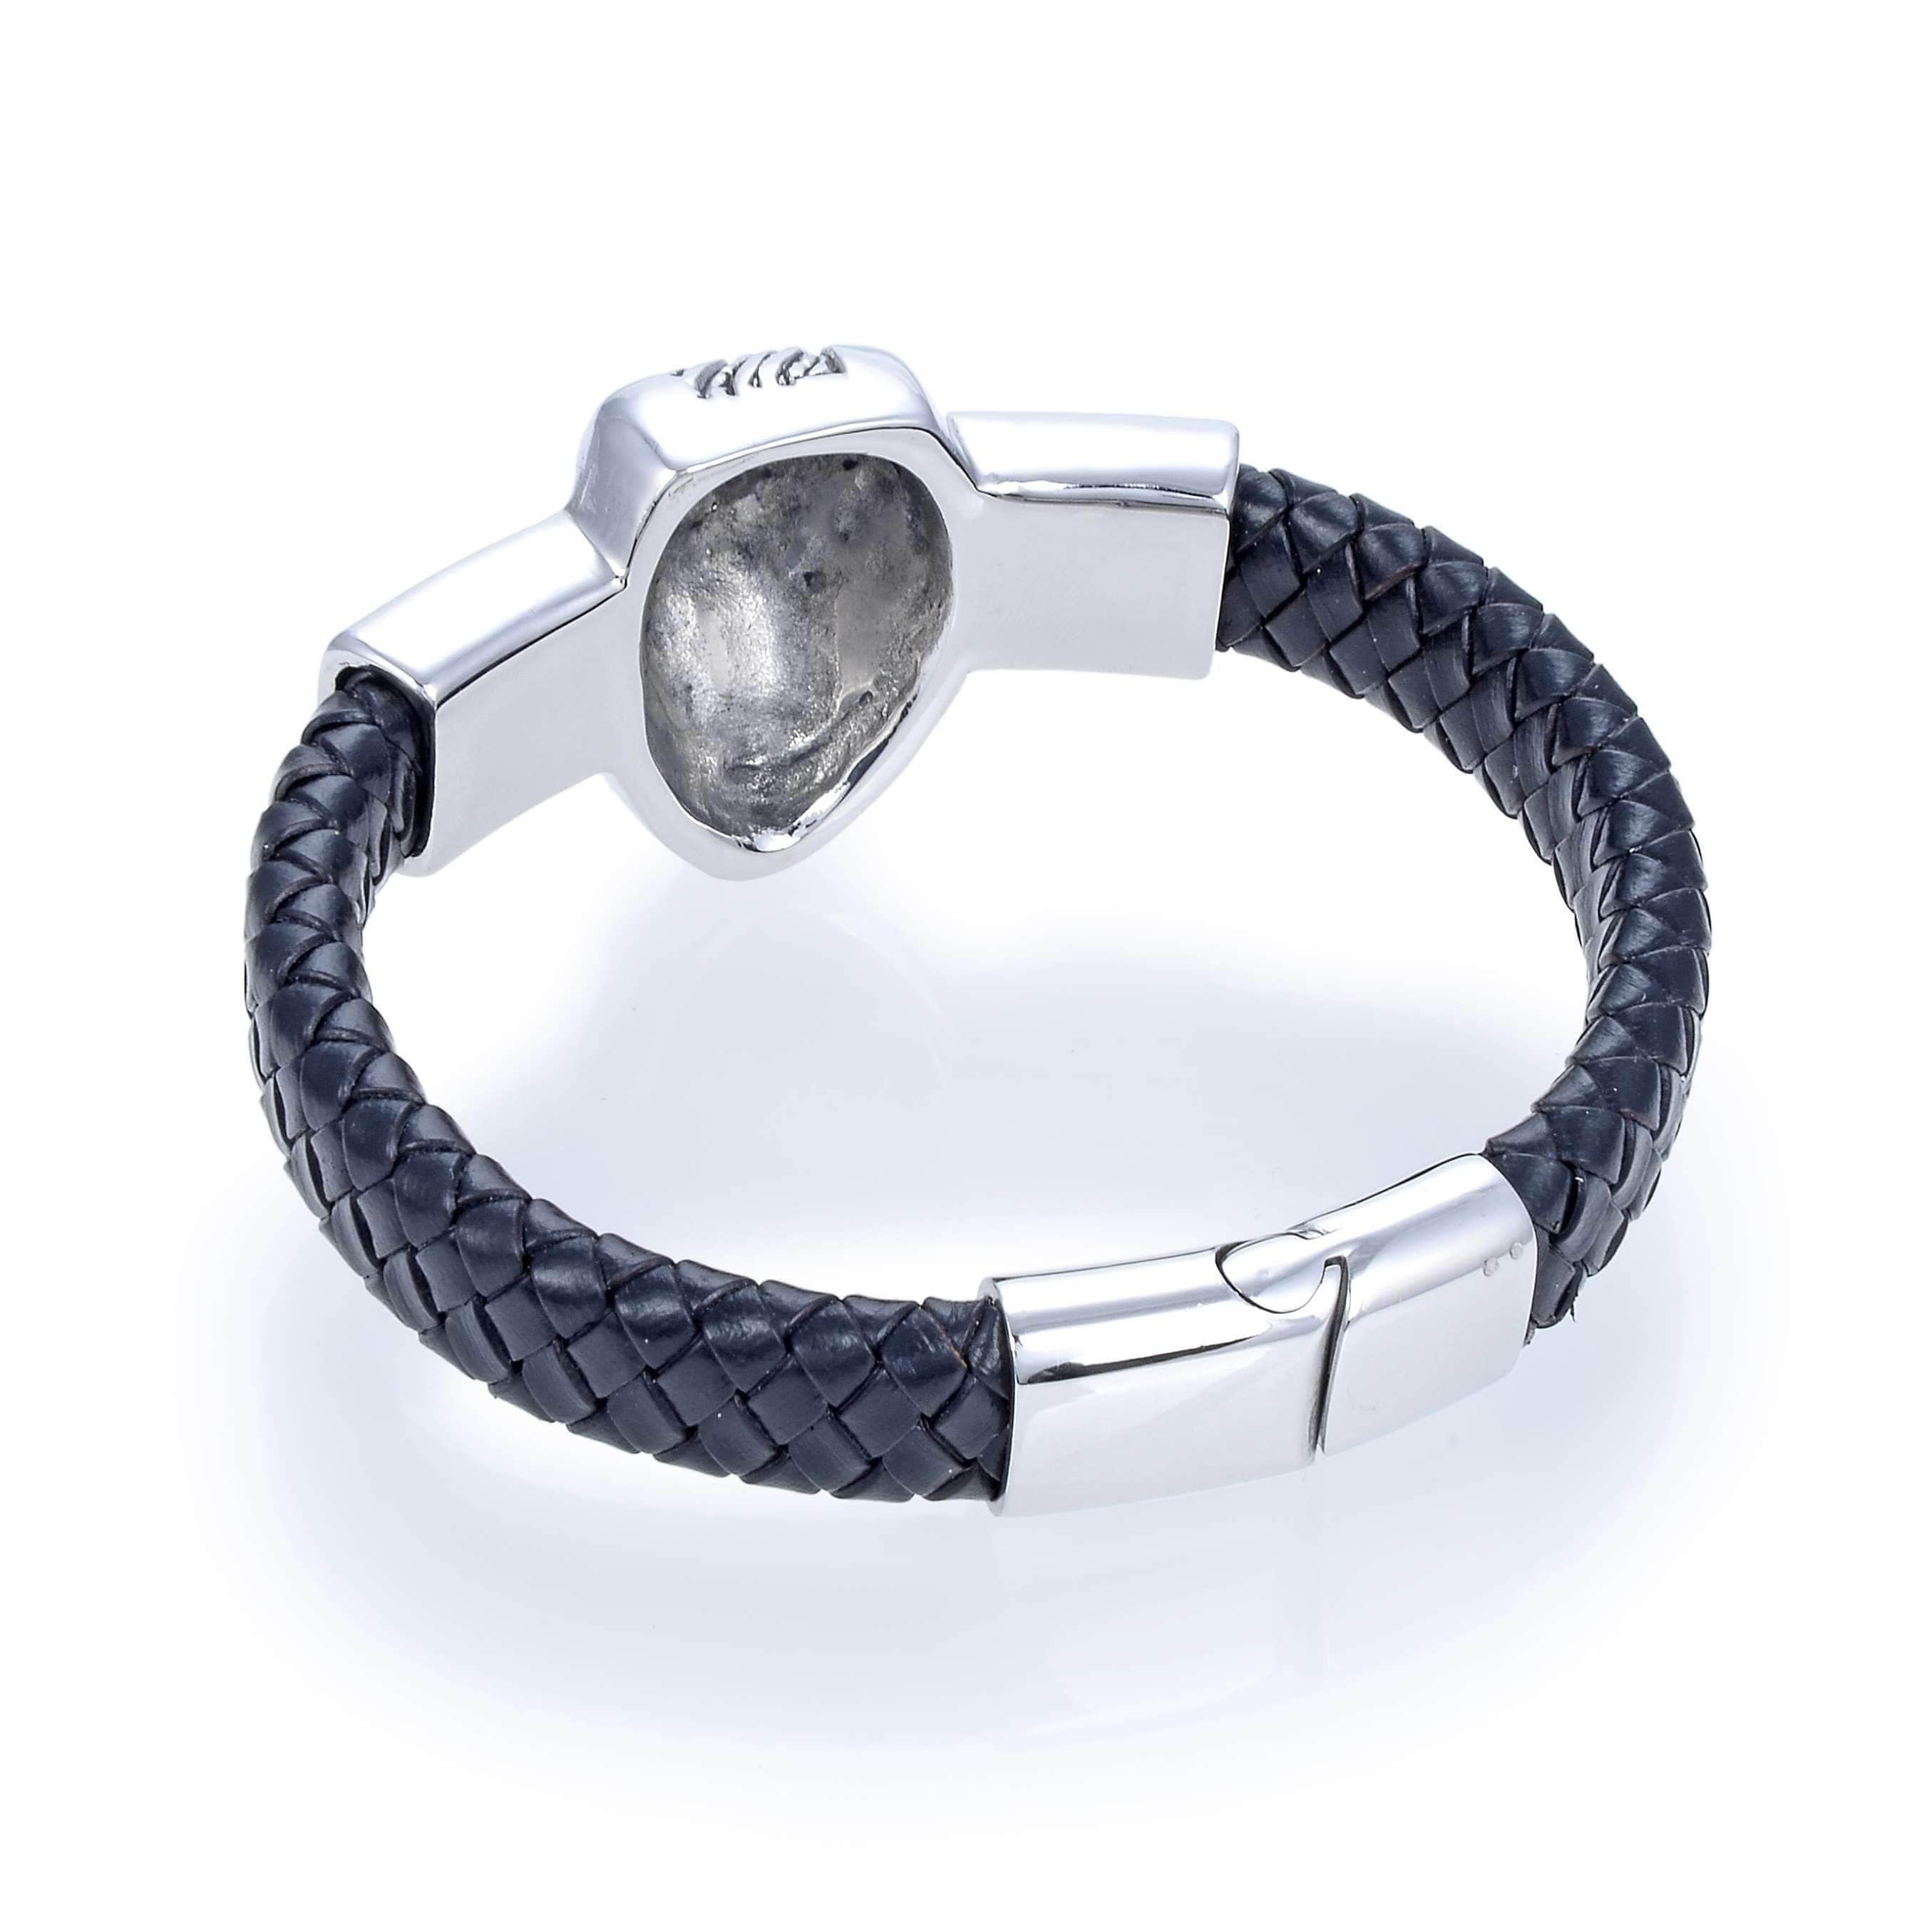 kalifano steel hearts jewelry steel hearts beast head black leather bracelet shb200 129 29686539190466